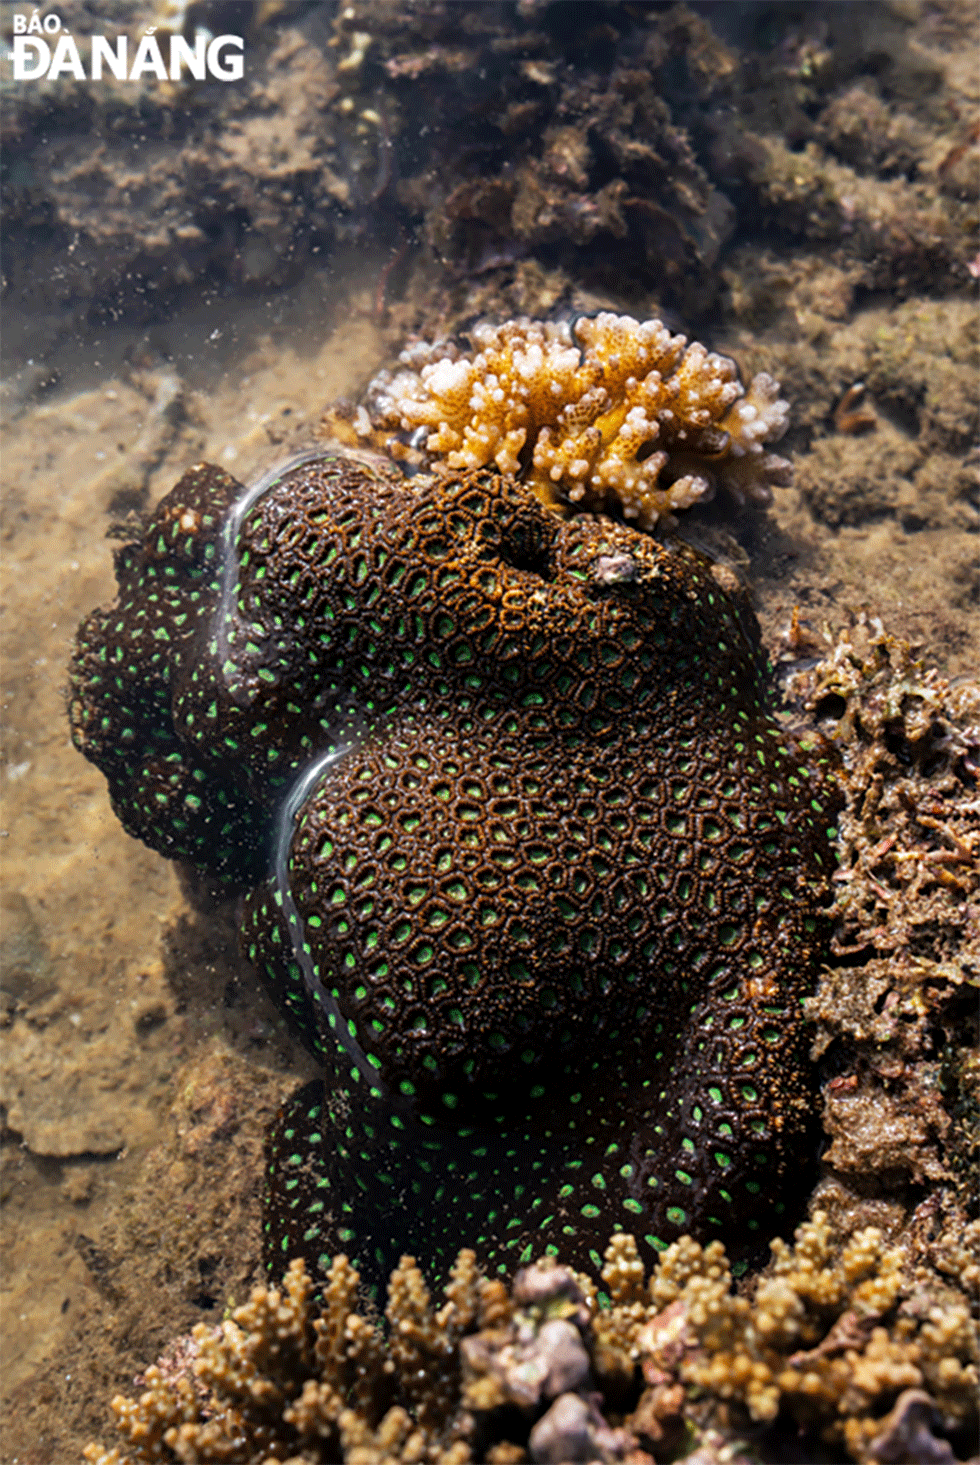 San hô ban đầu hình thành còn non, mềm. Sau 10-15 năm mới cứng dần, trải qua thời gian dài cả trăm năm mới thành rừng san hô. 